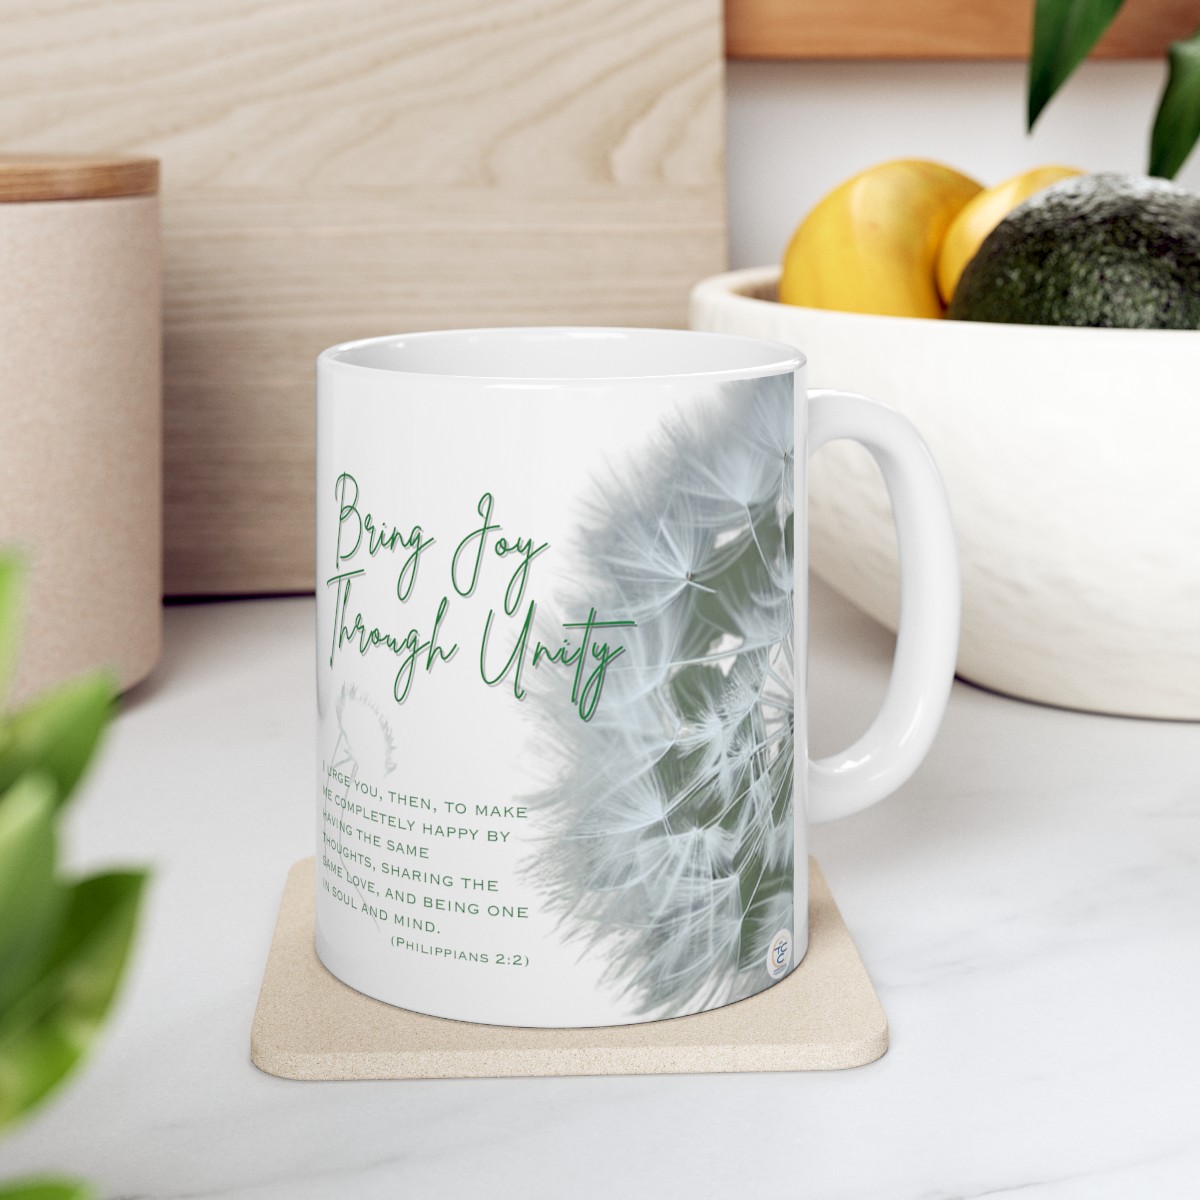 Bring Joy Through Unity Devotional Ceramic Mug 11oz product main image